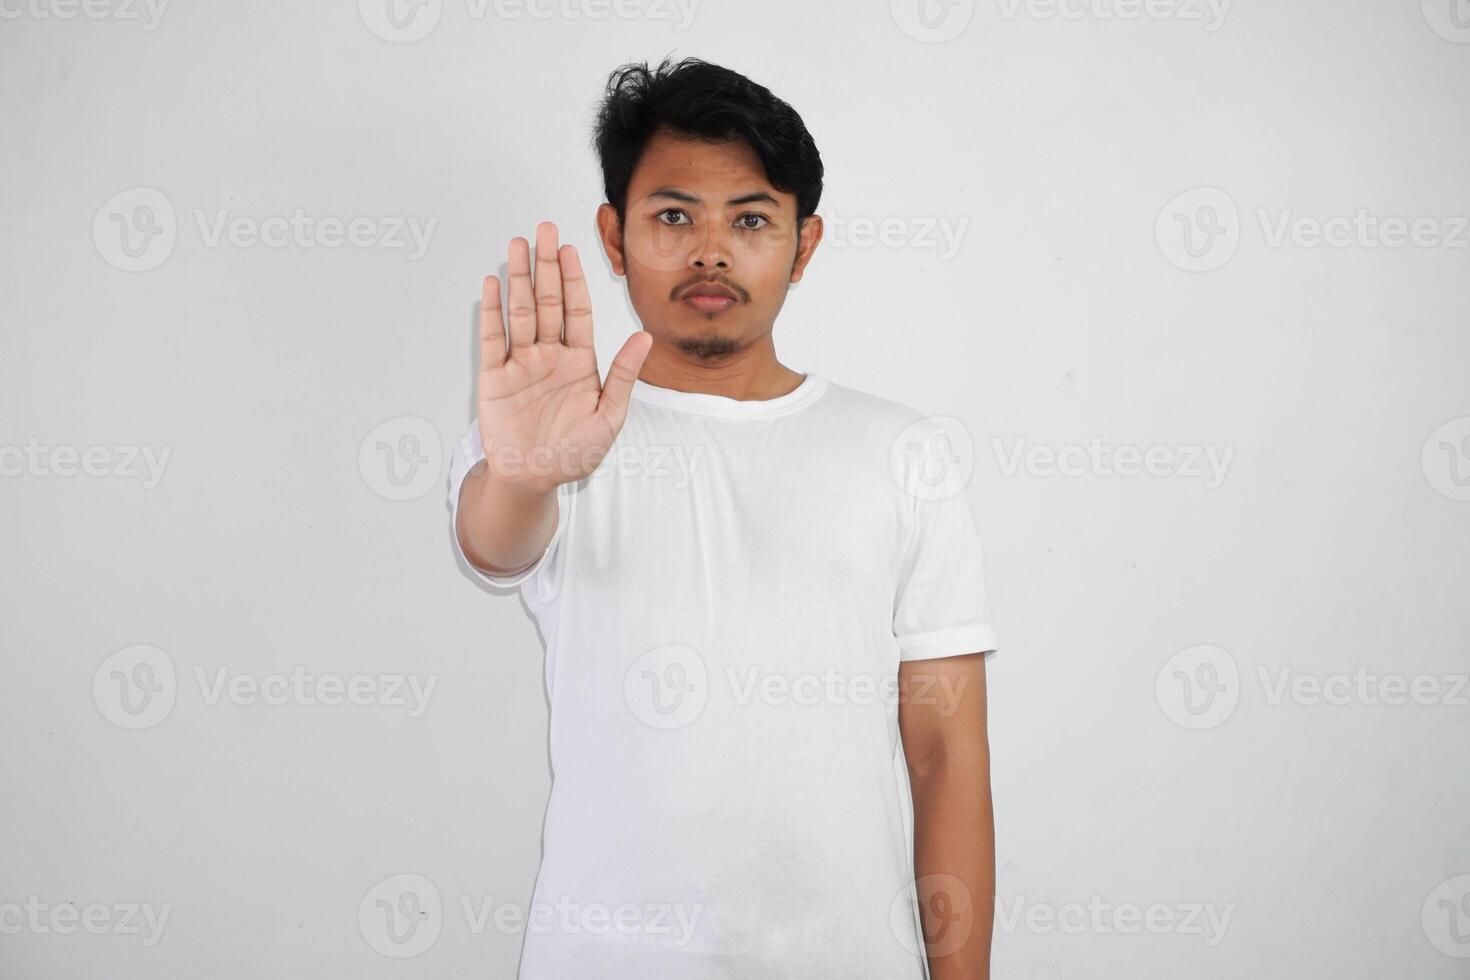 ernst jung asiatisch Mann zeigen halt Geste, demonstrieren Verweigerung Zeichen tragen Weiß t Hemd isoliert auf Weiß Hintergrund foto